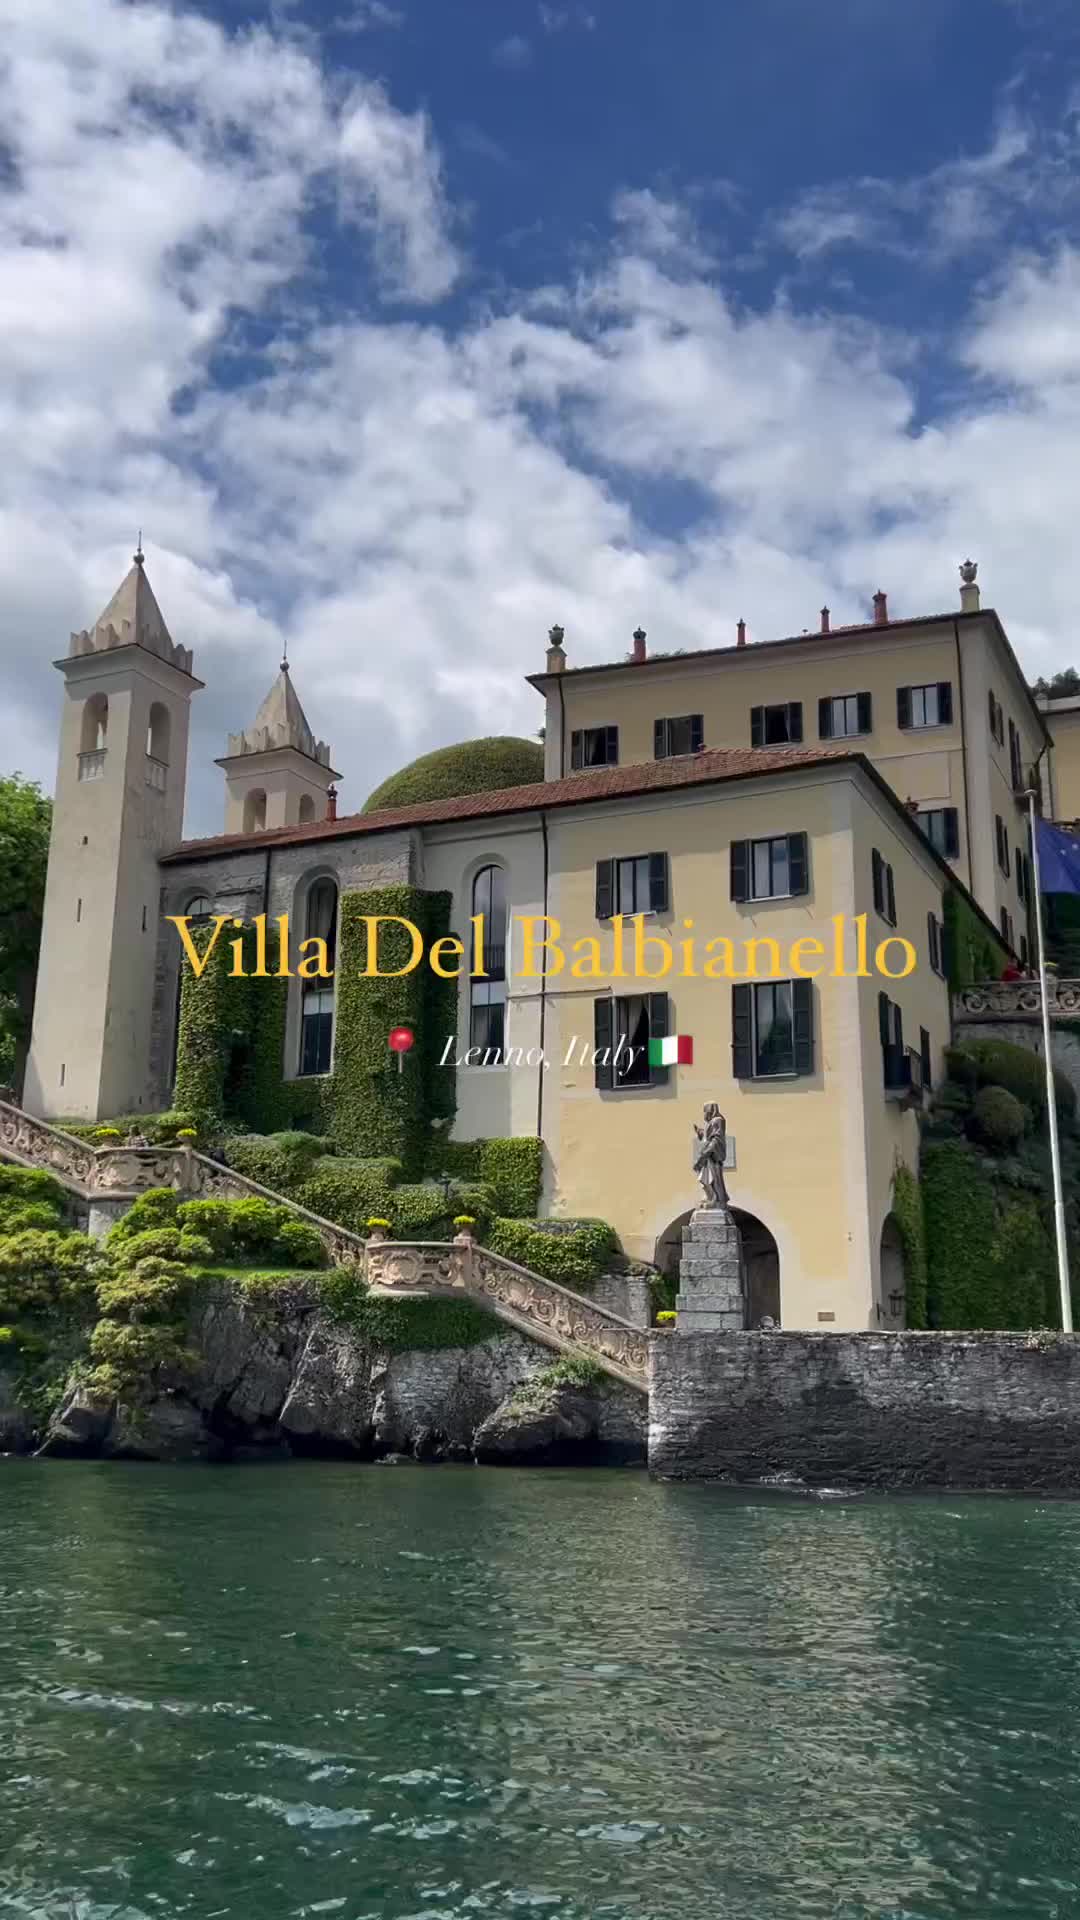 Explore Villa del Balbianello: Lenno's Architectural Gem